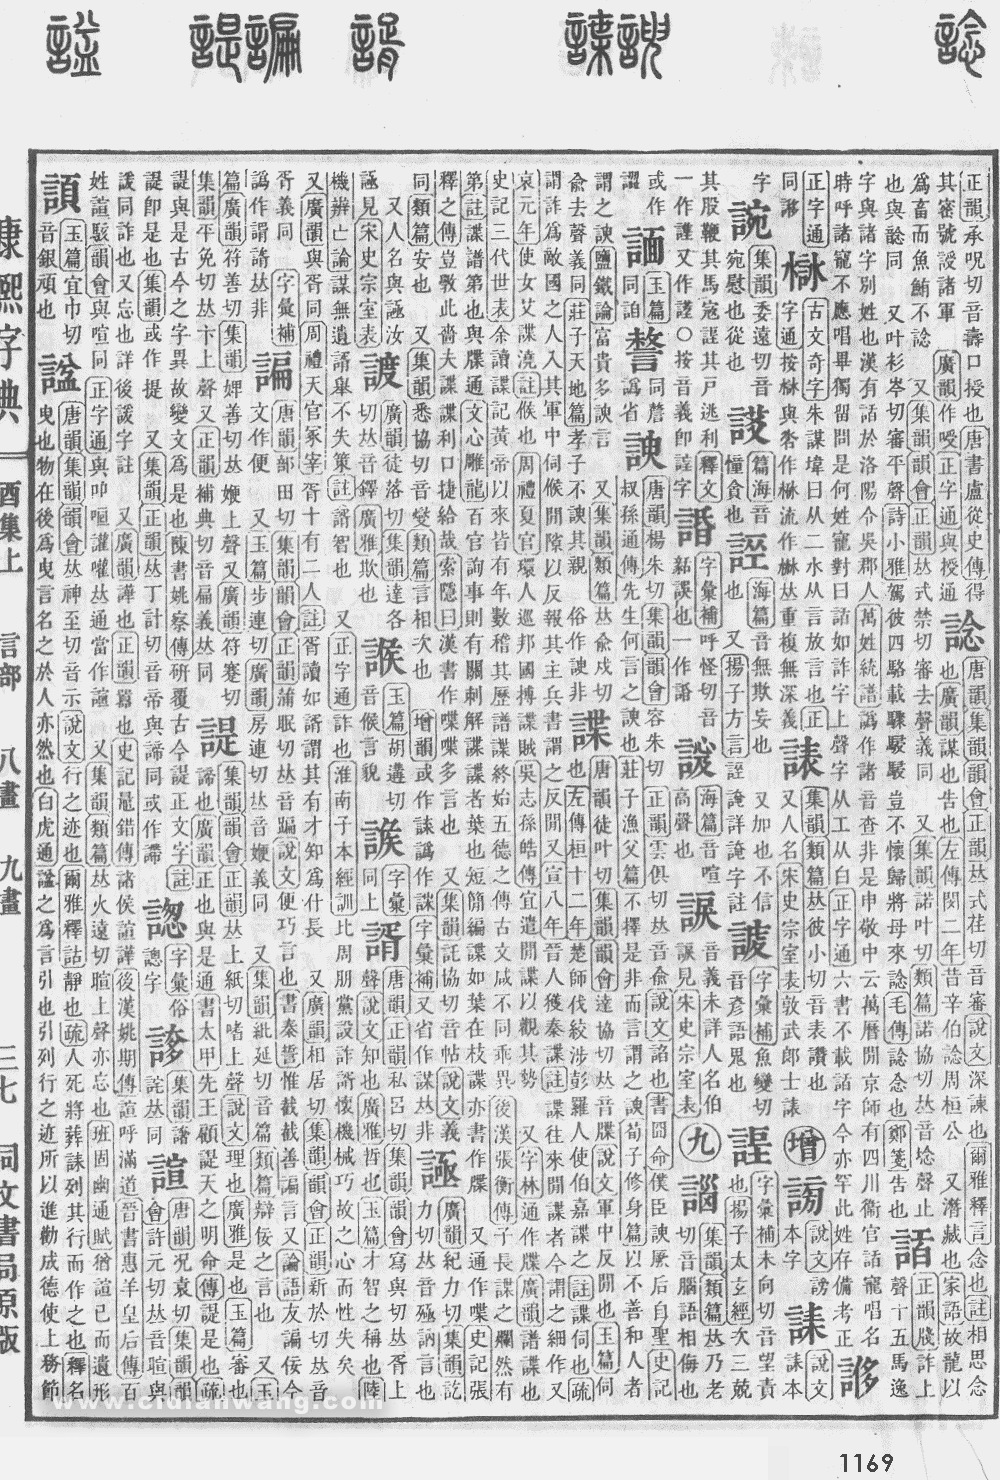 康熙字典掃描版第1169頁